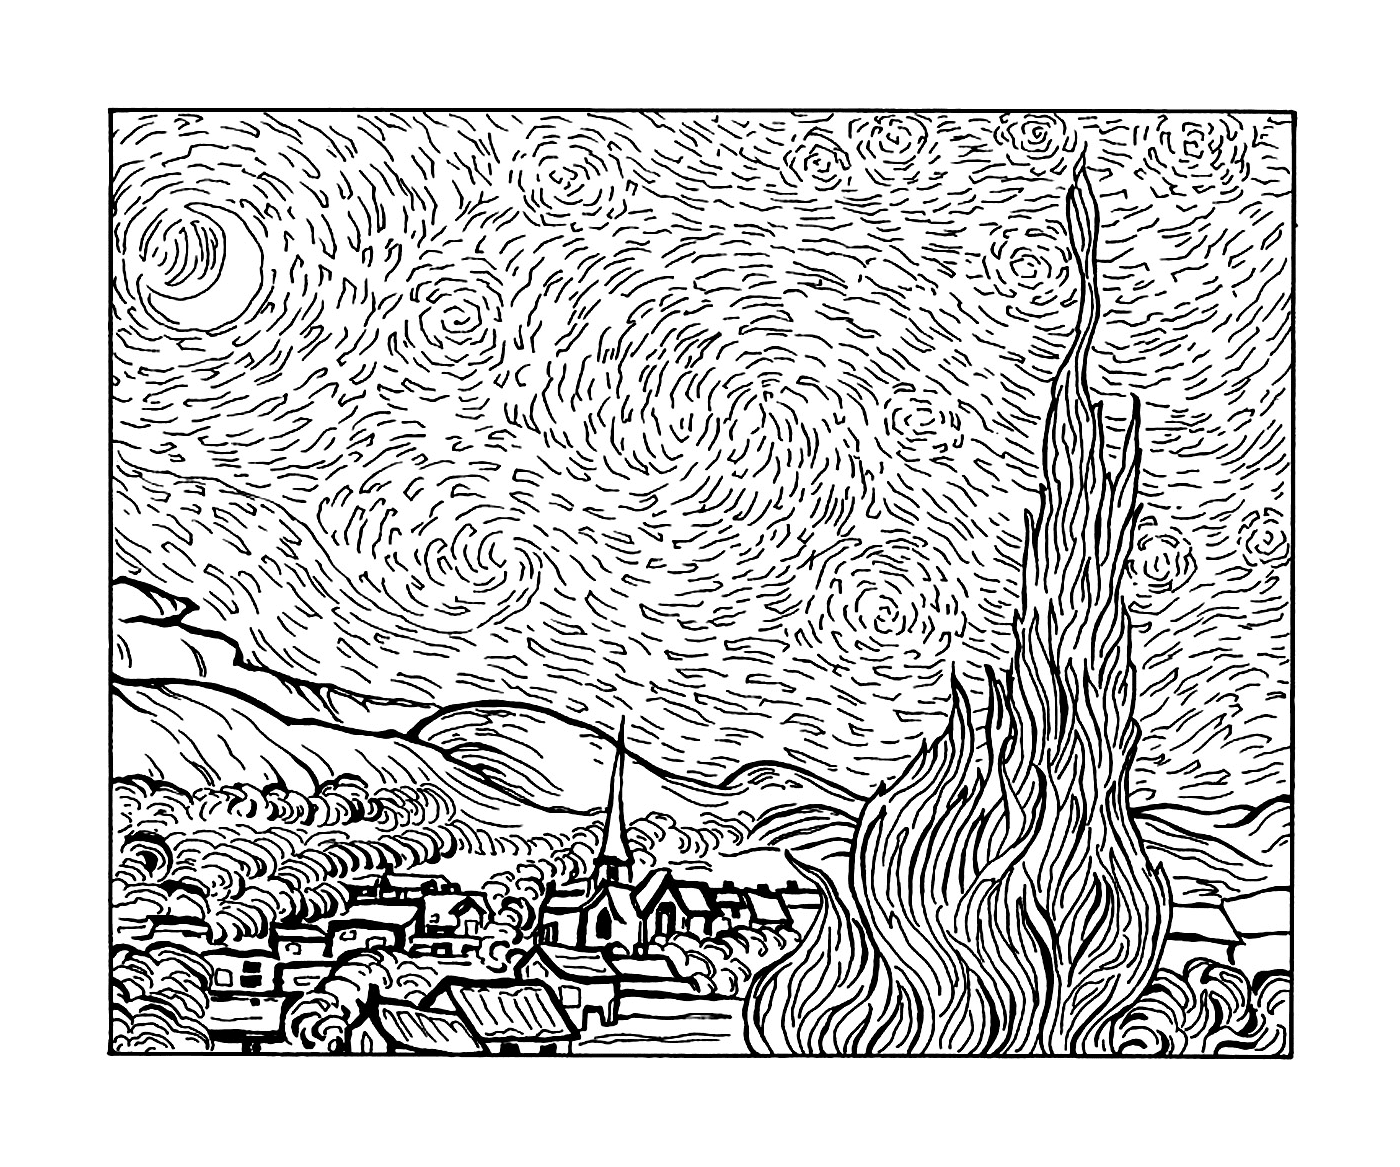  una ciudad y un árbol según la noche estrellada de Van Gogh 